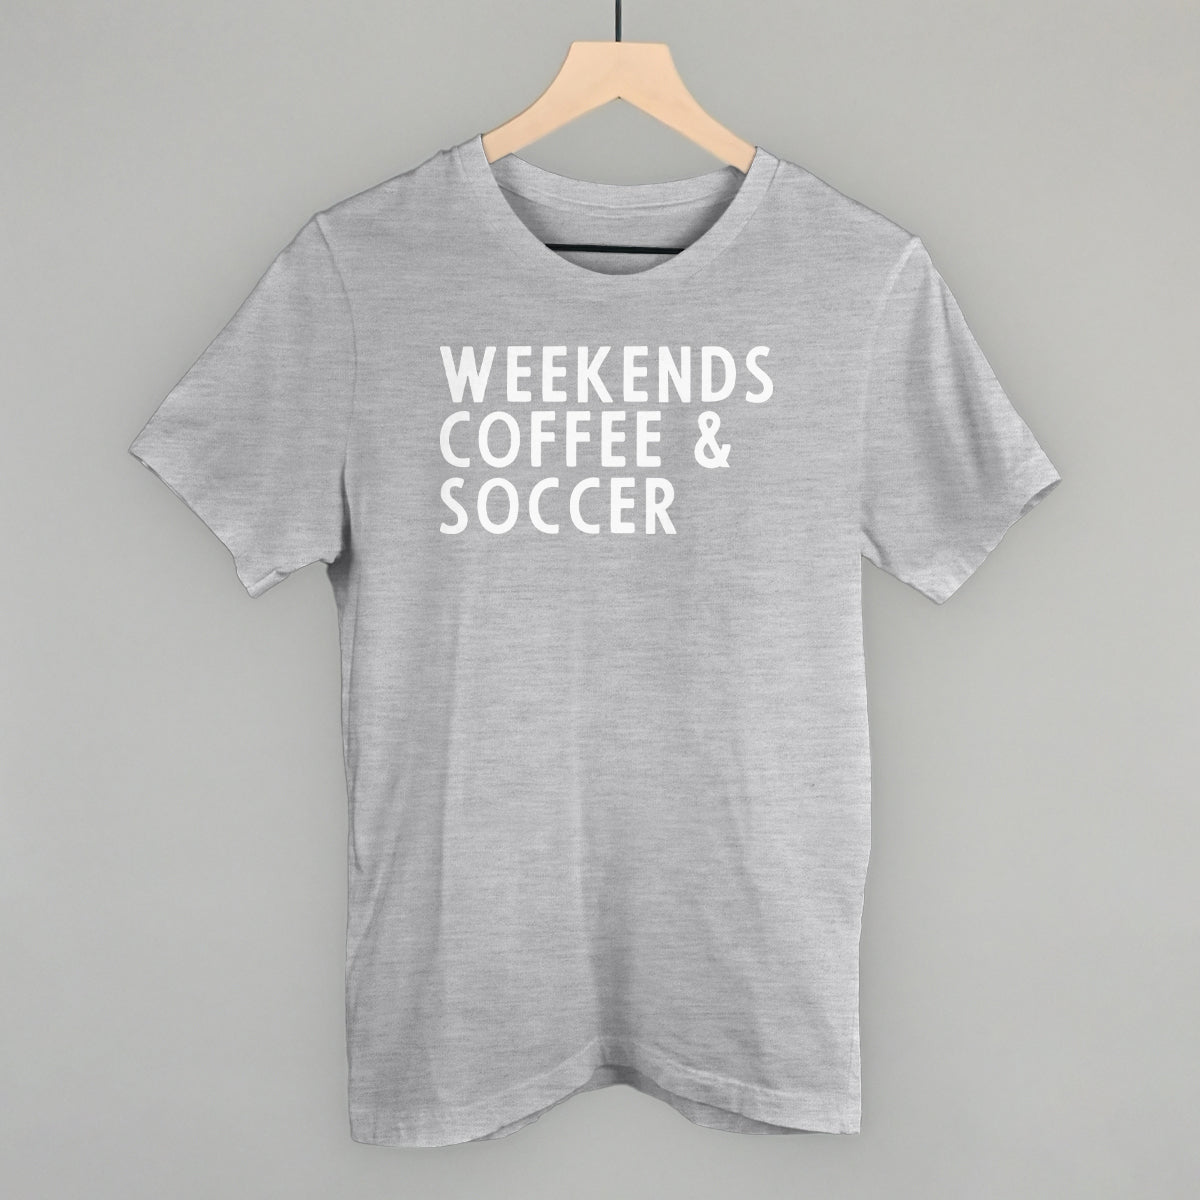 Weekends Coffee & Soccer